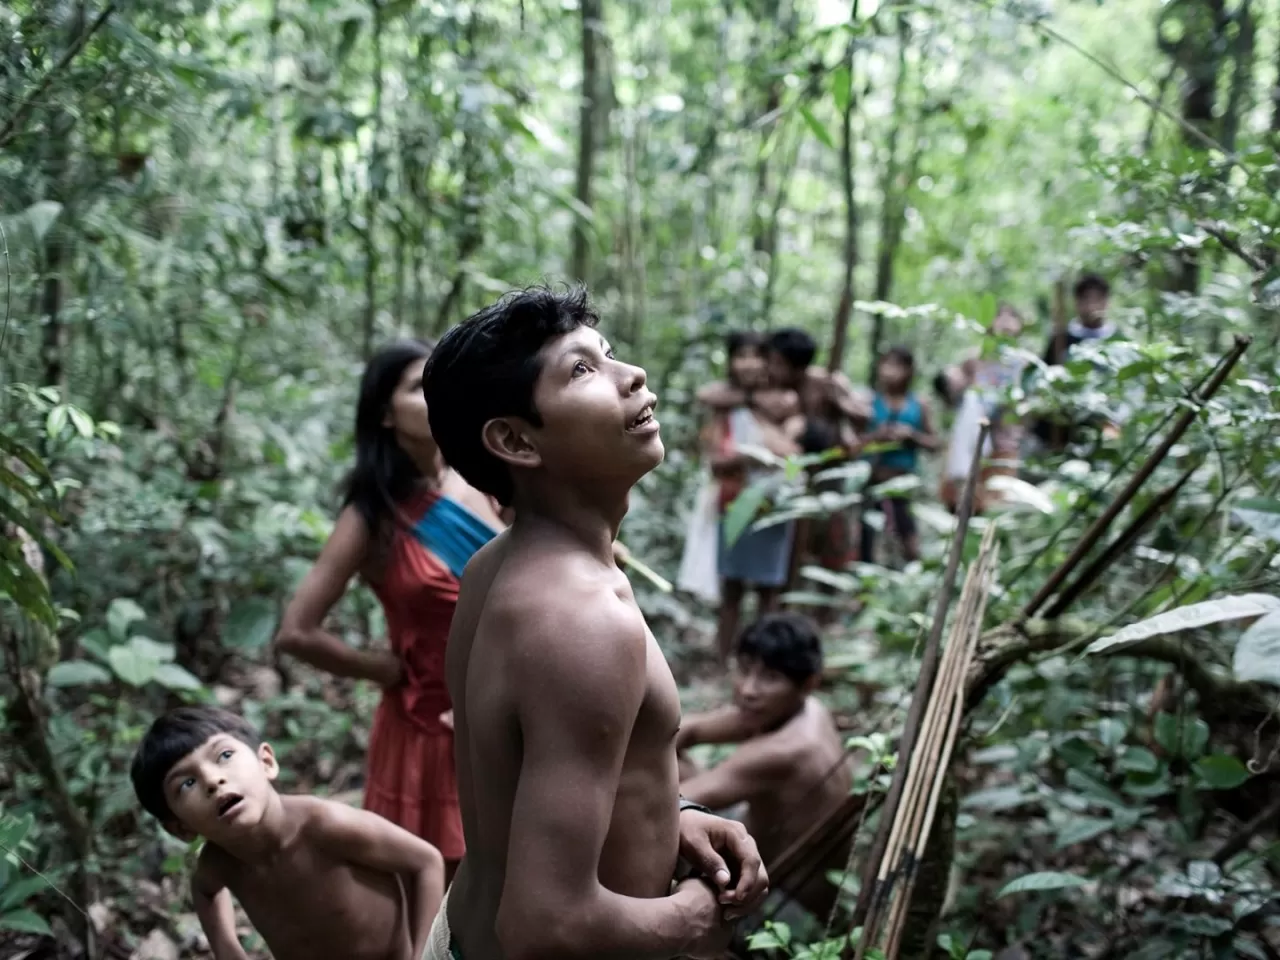 Brazilian machete rainforest massacre